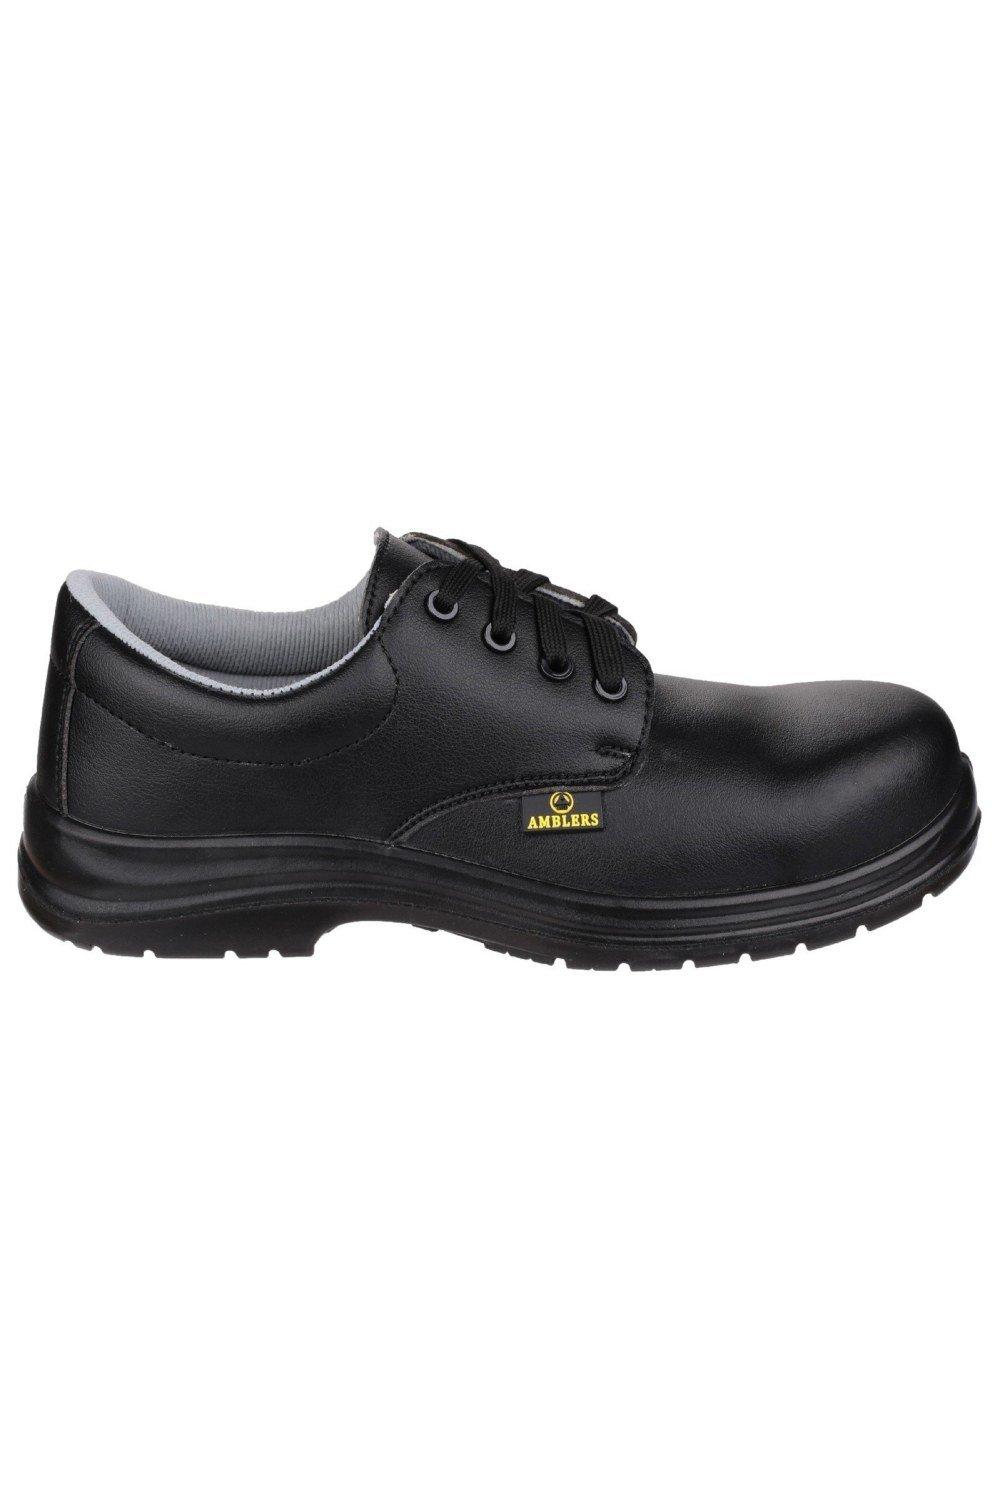 Безопасность FS662 Защитная обувь на шнуровке Amblers, черный